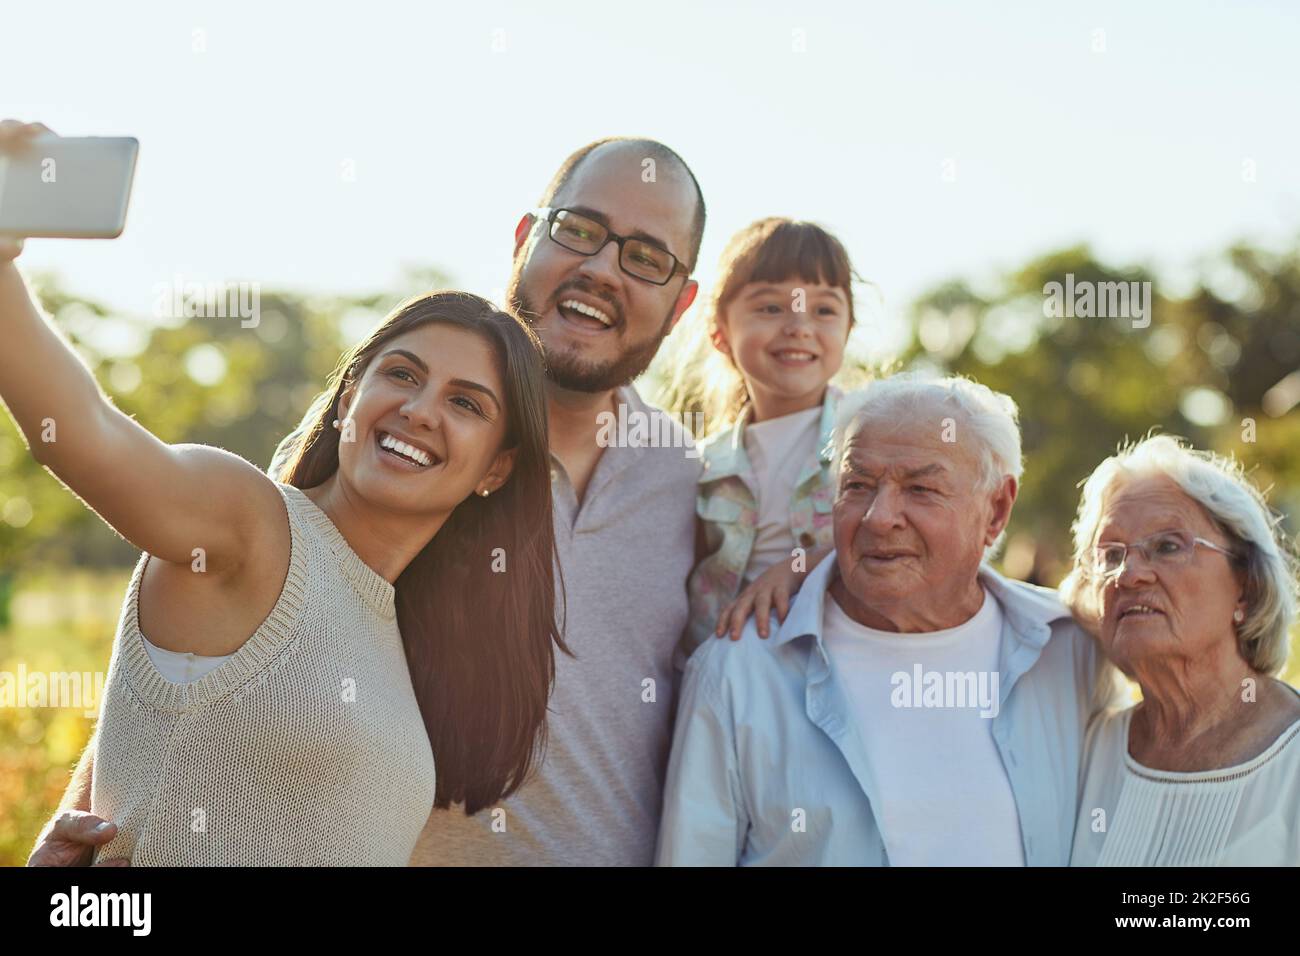 Im Leben geht es darum, diese glücklichen Momente zu sammeln. Aufnahme einer glücklichen Familie, die zusammen ein Selfie im Park macht. Stockfoto